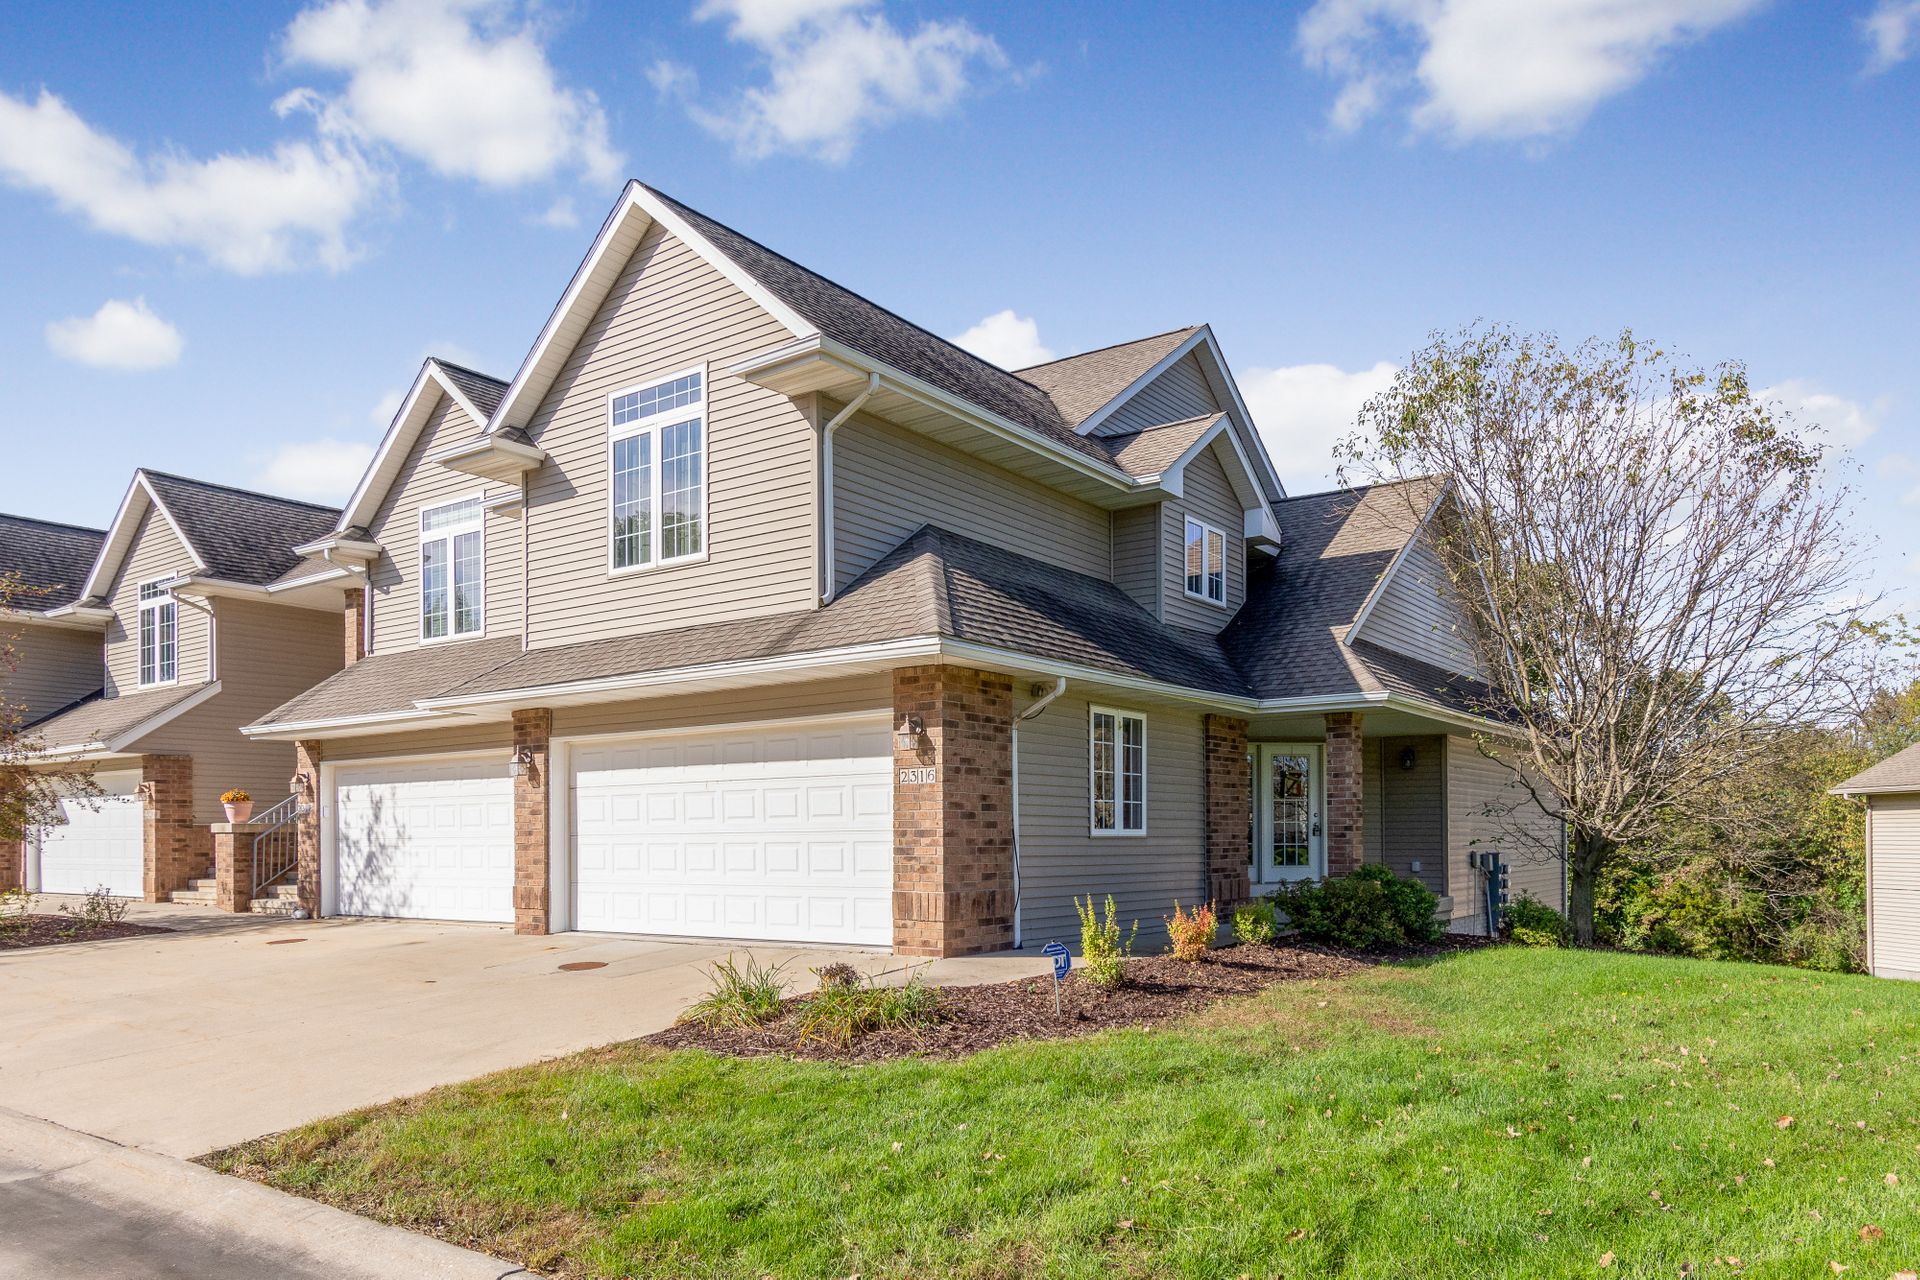 Liz Firmstone Realtor Home for Sale Coralville Iowa!